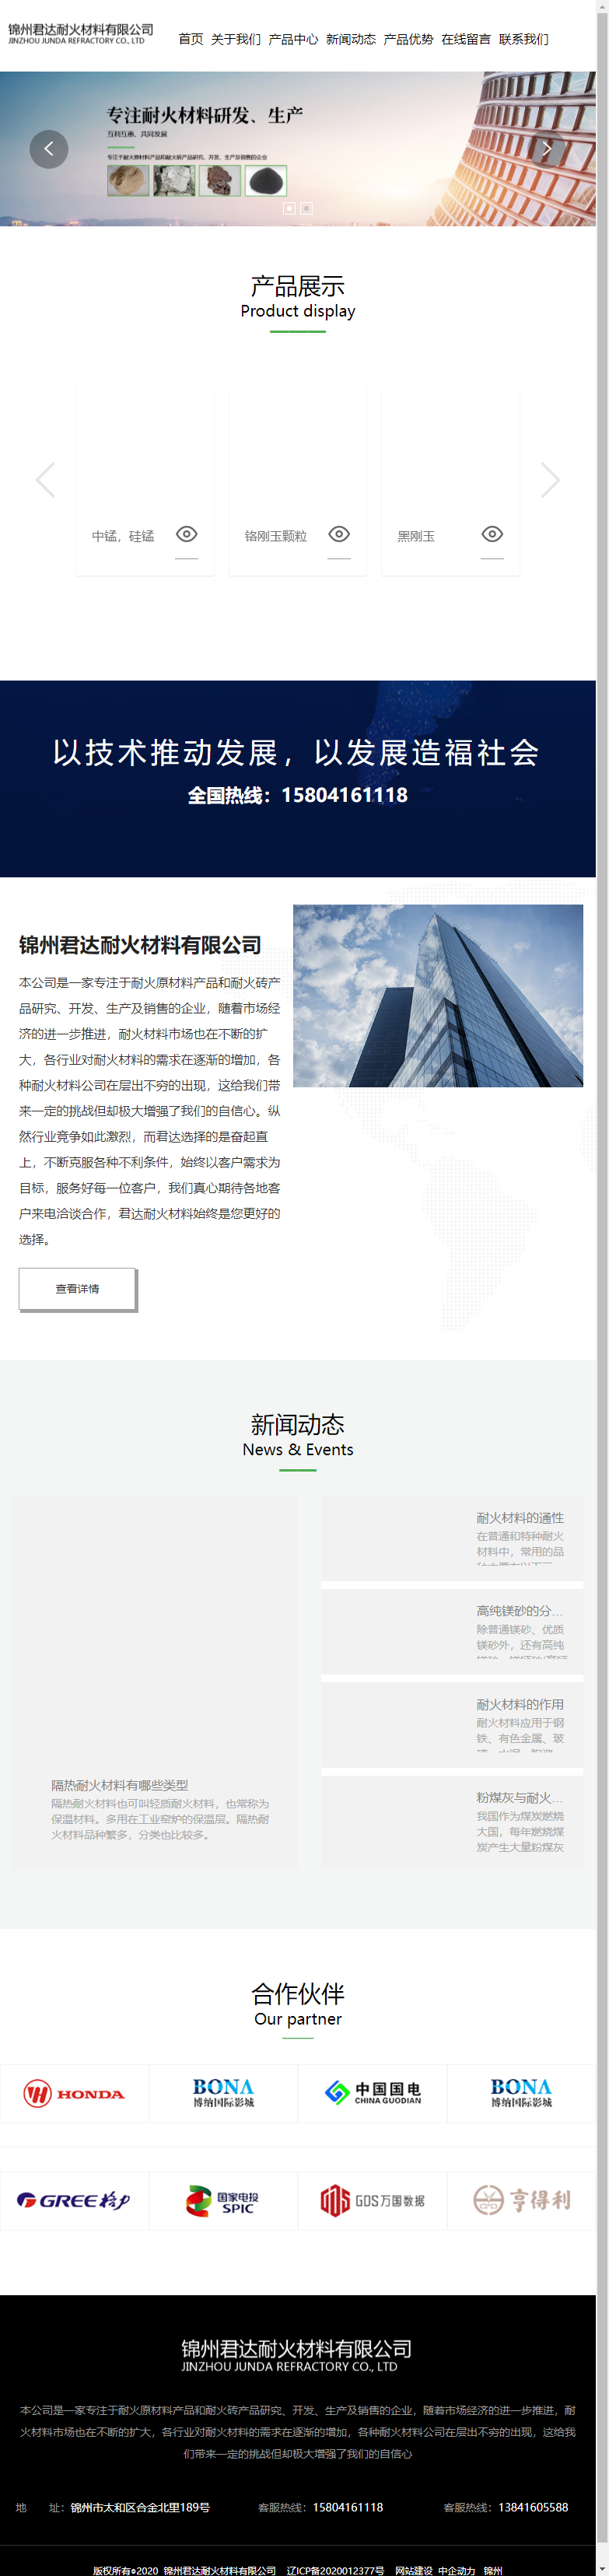 锦州君达耐火材料有限公司网站案例